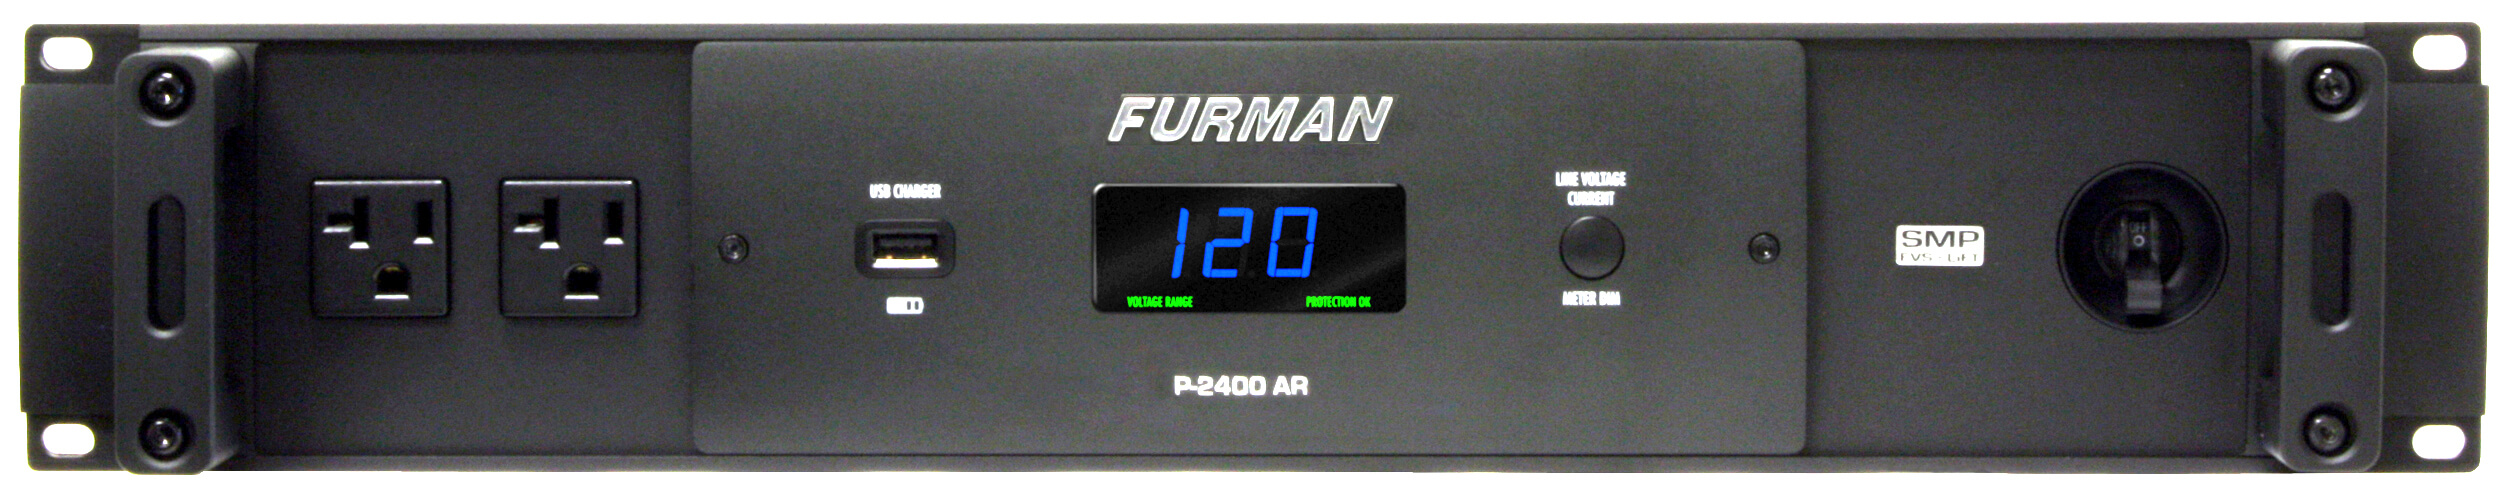 Furman P-2400 Ar Regulador De Voltaje/acondicionador De Energía Con 14 Puntos De Venta, 20amperes